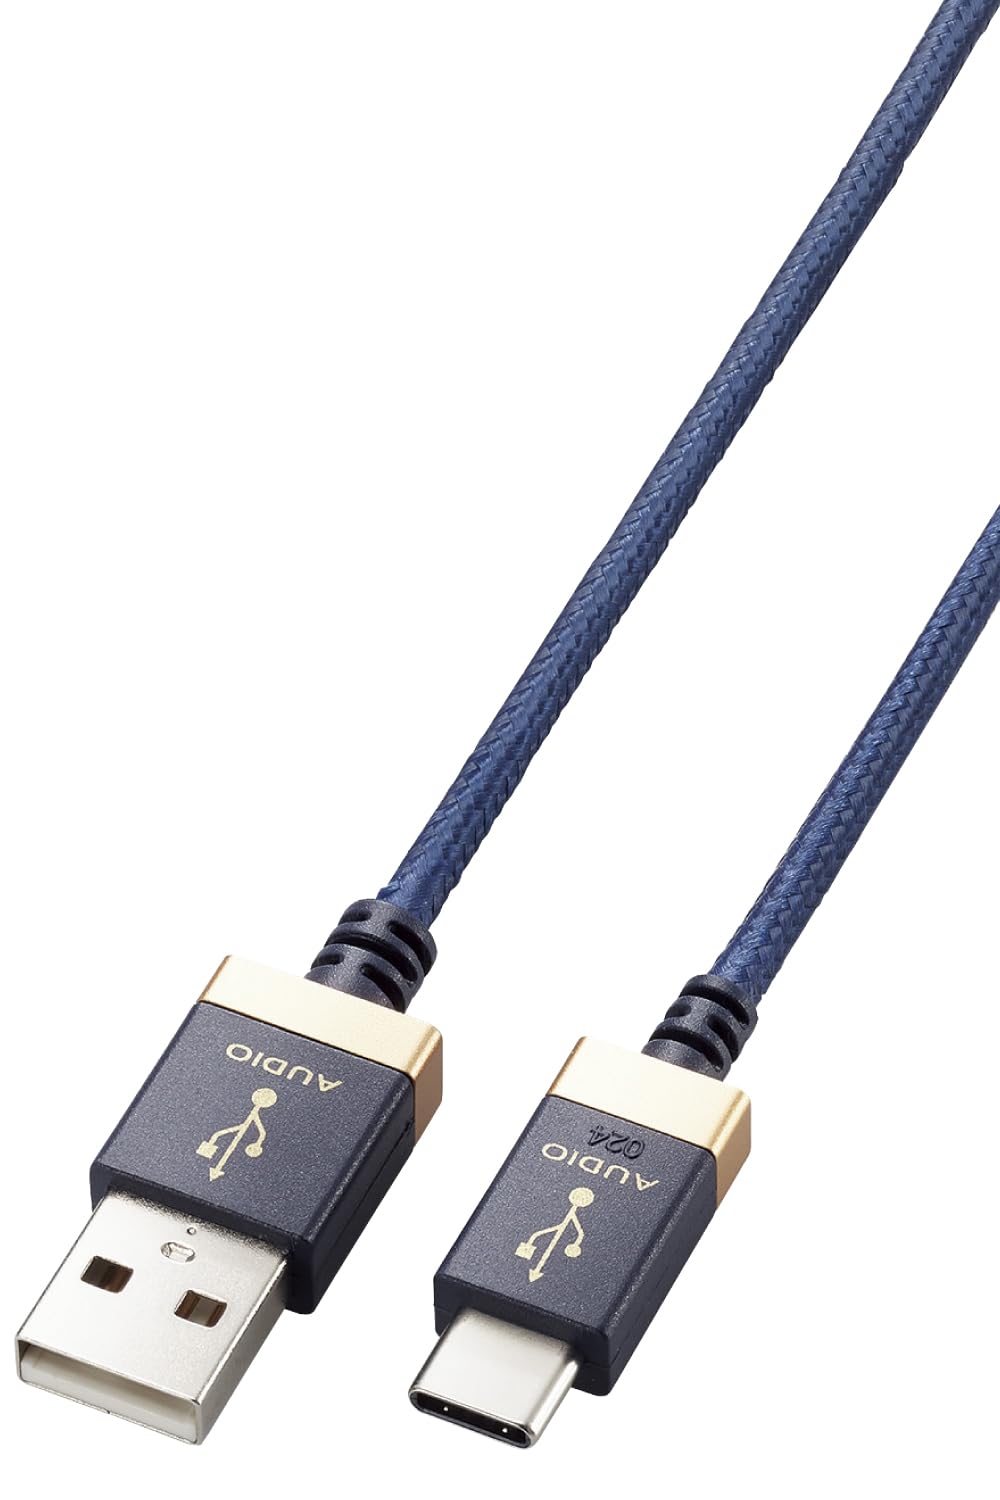 エレコム USB ケーブル オーディオ用 変換 タイプA タイプC USB-A USB-C 音楽伝送 高音質 OTG ハイレゾ音声 ナイロンメッシュ 1m ネイビー DAC アンプ オーディオインターフェイスなどに対応 DH-AC10